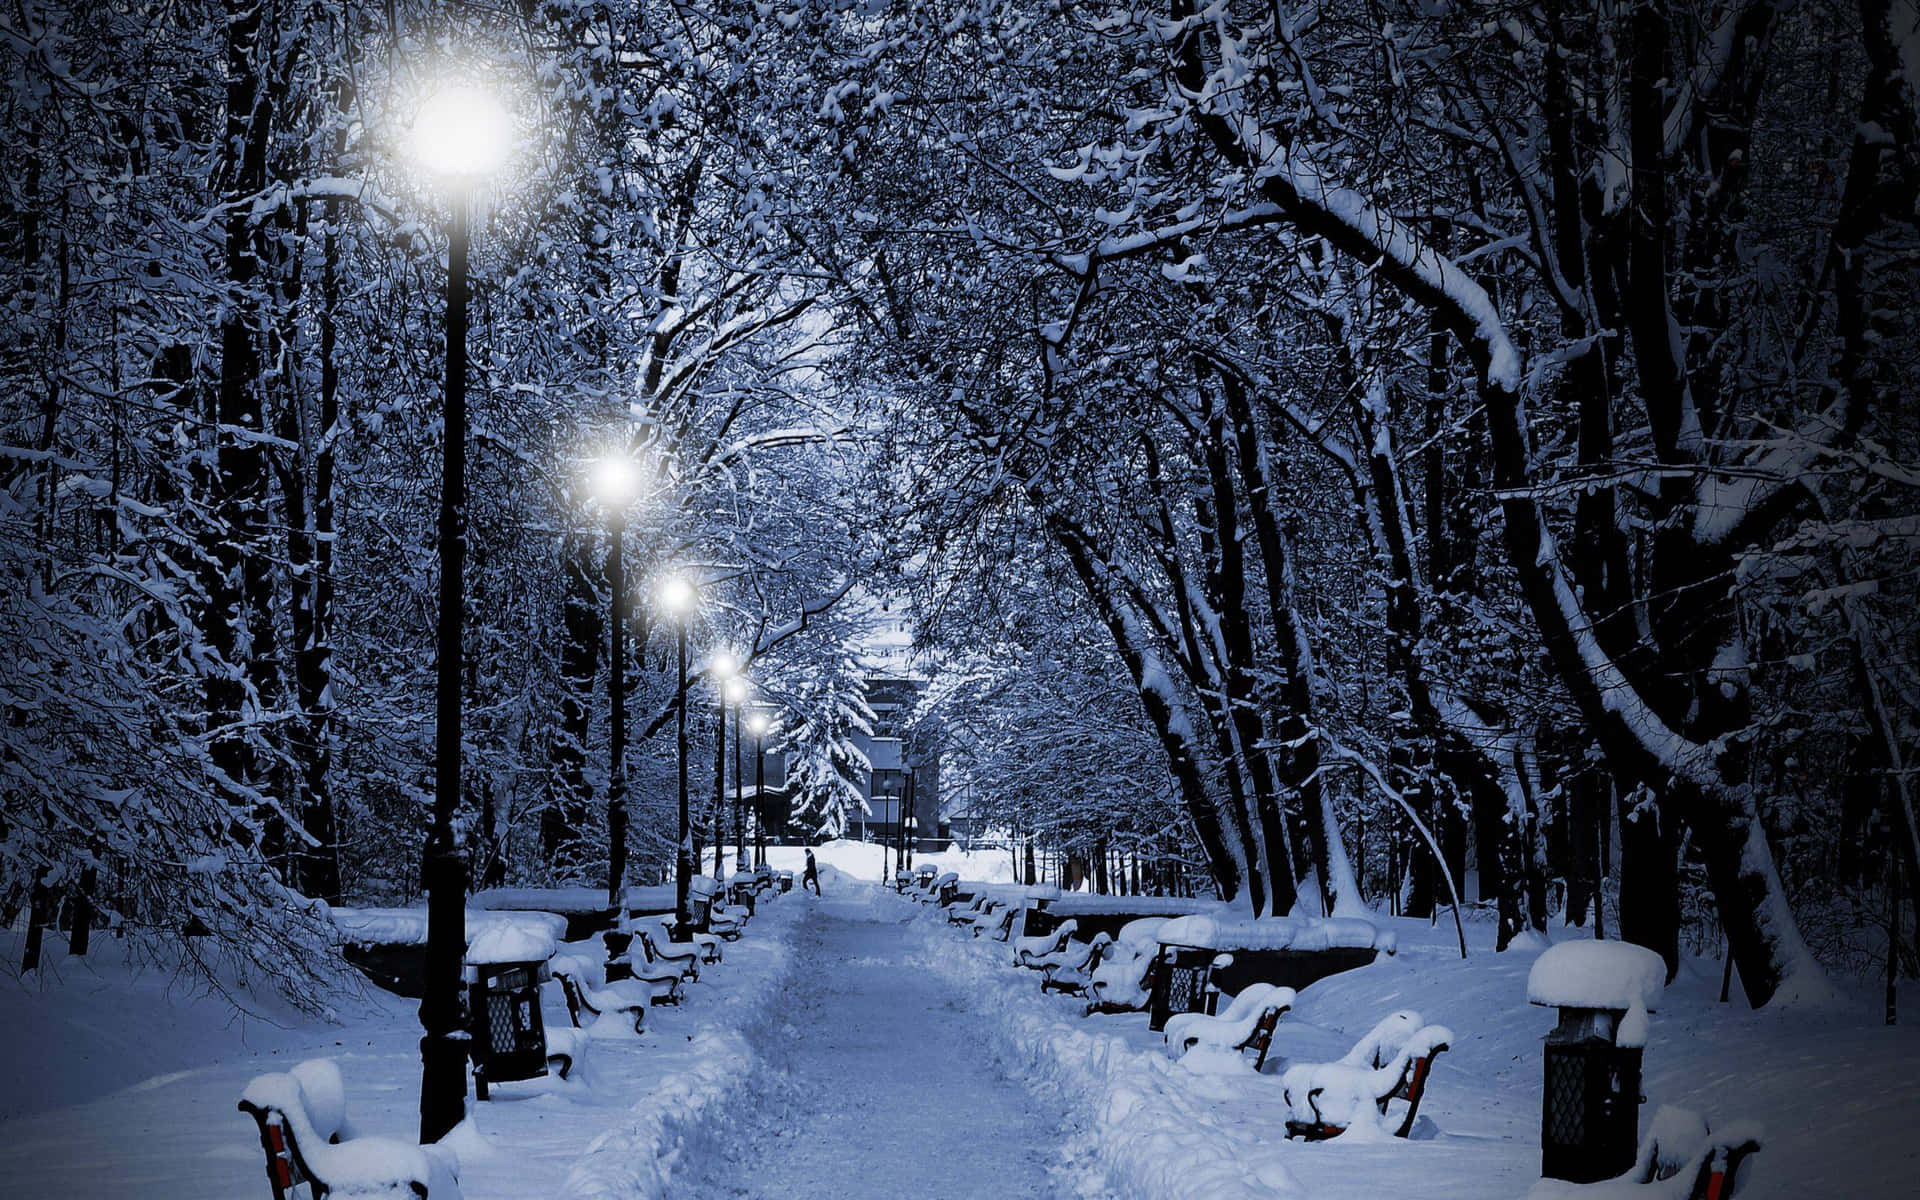 "Beauty of a Snowy Winter Wonderland"